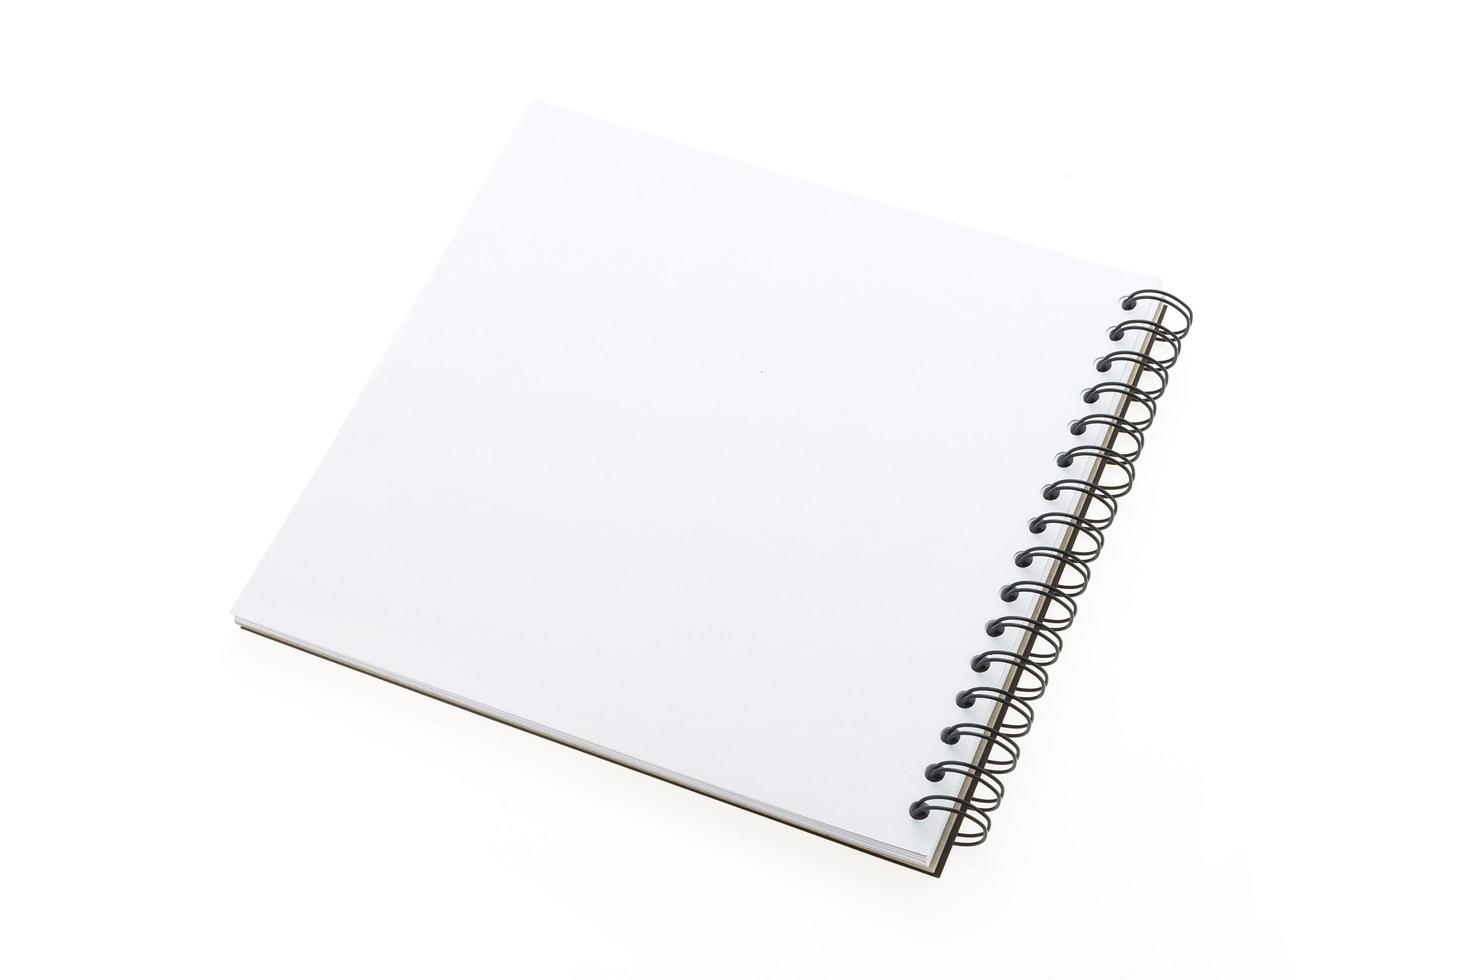 cuaderno en blanco aislado foto